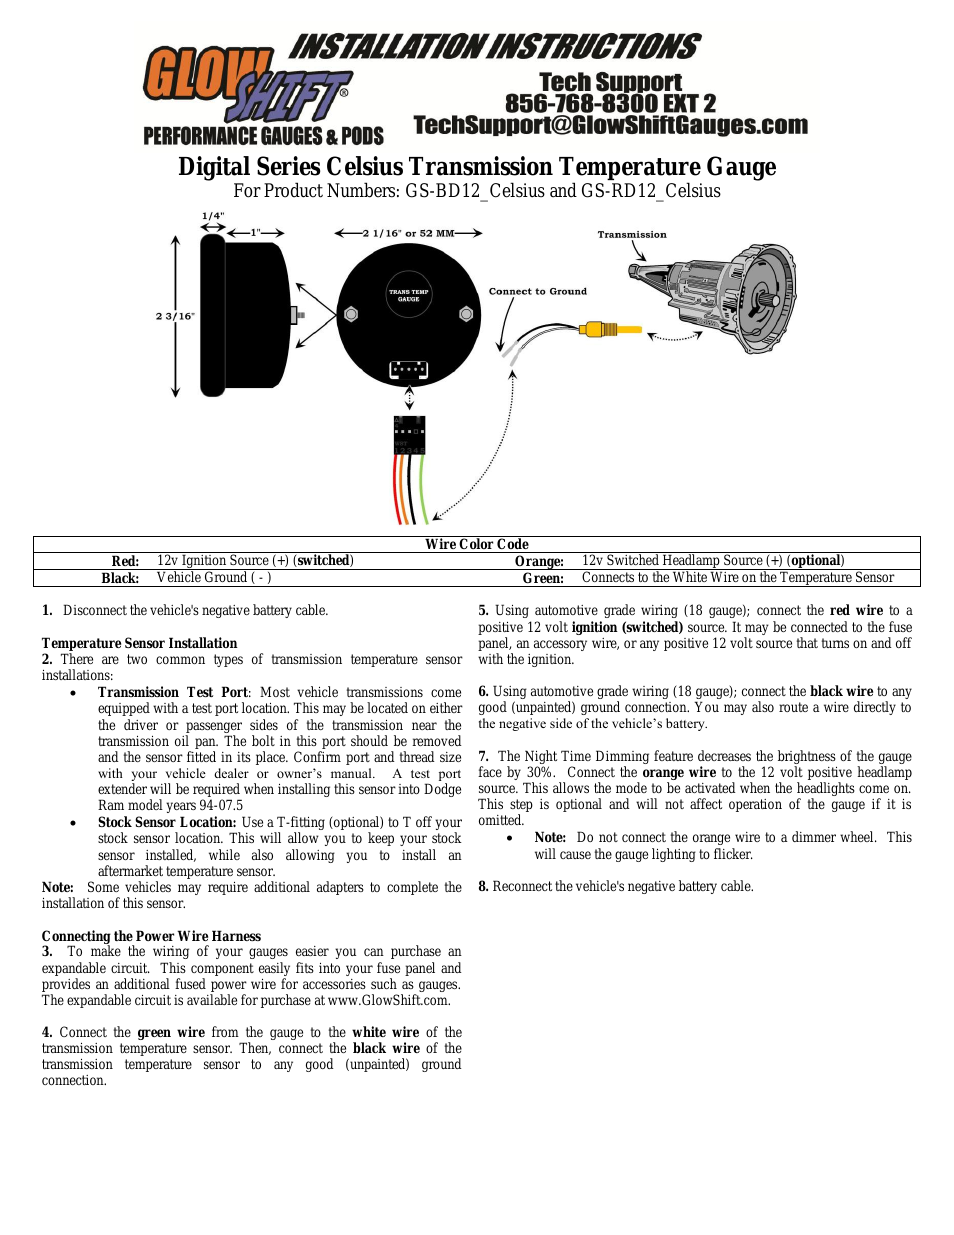 Digital Series Celsius Transmission Temperature Gauge